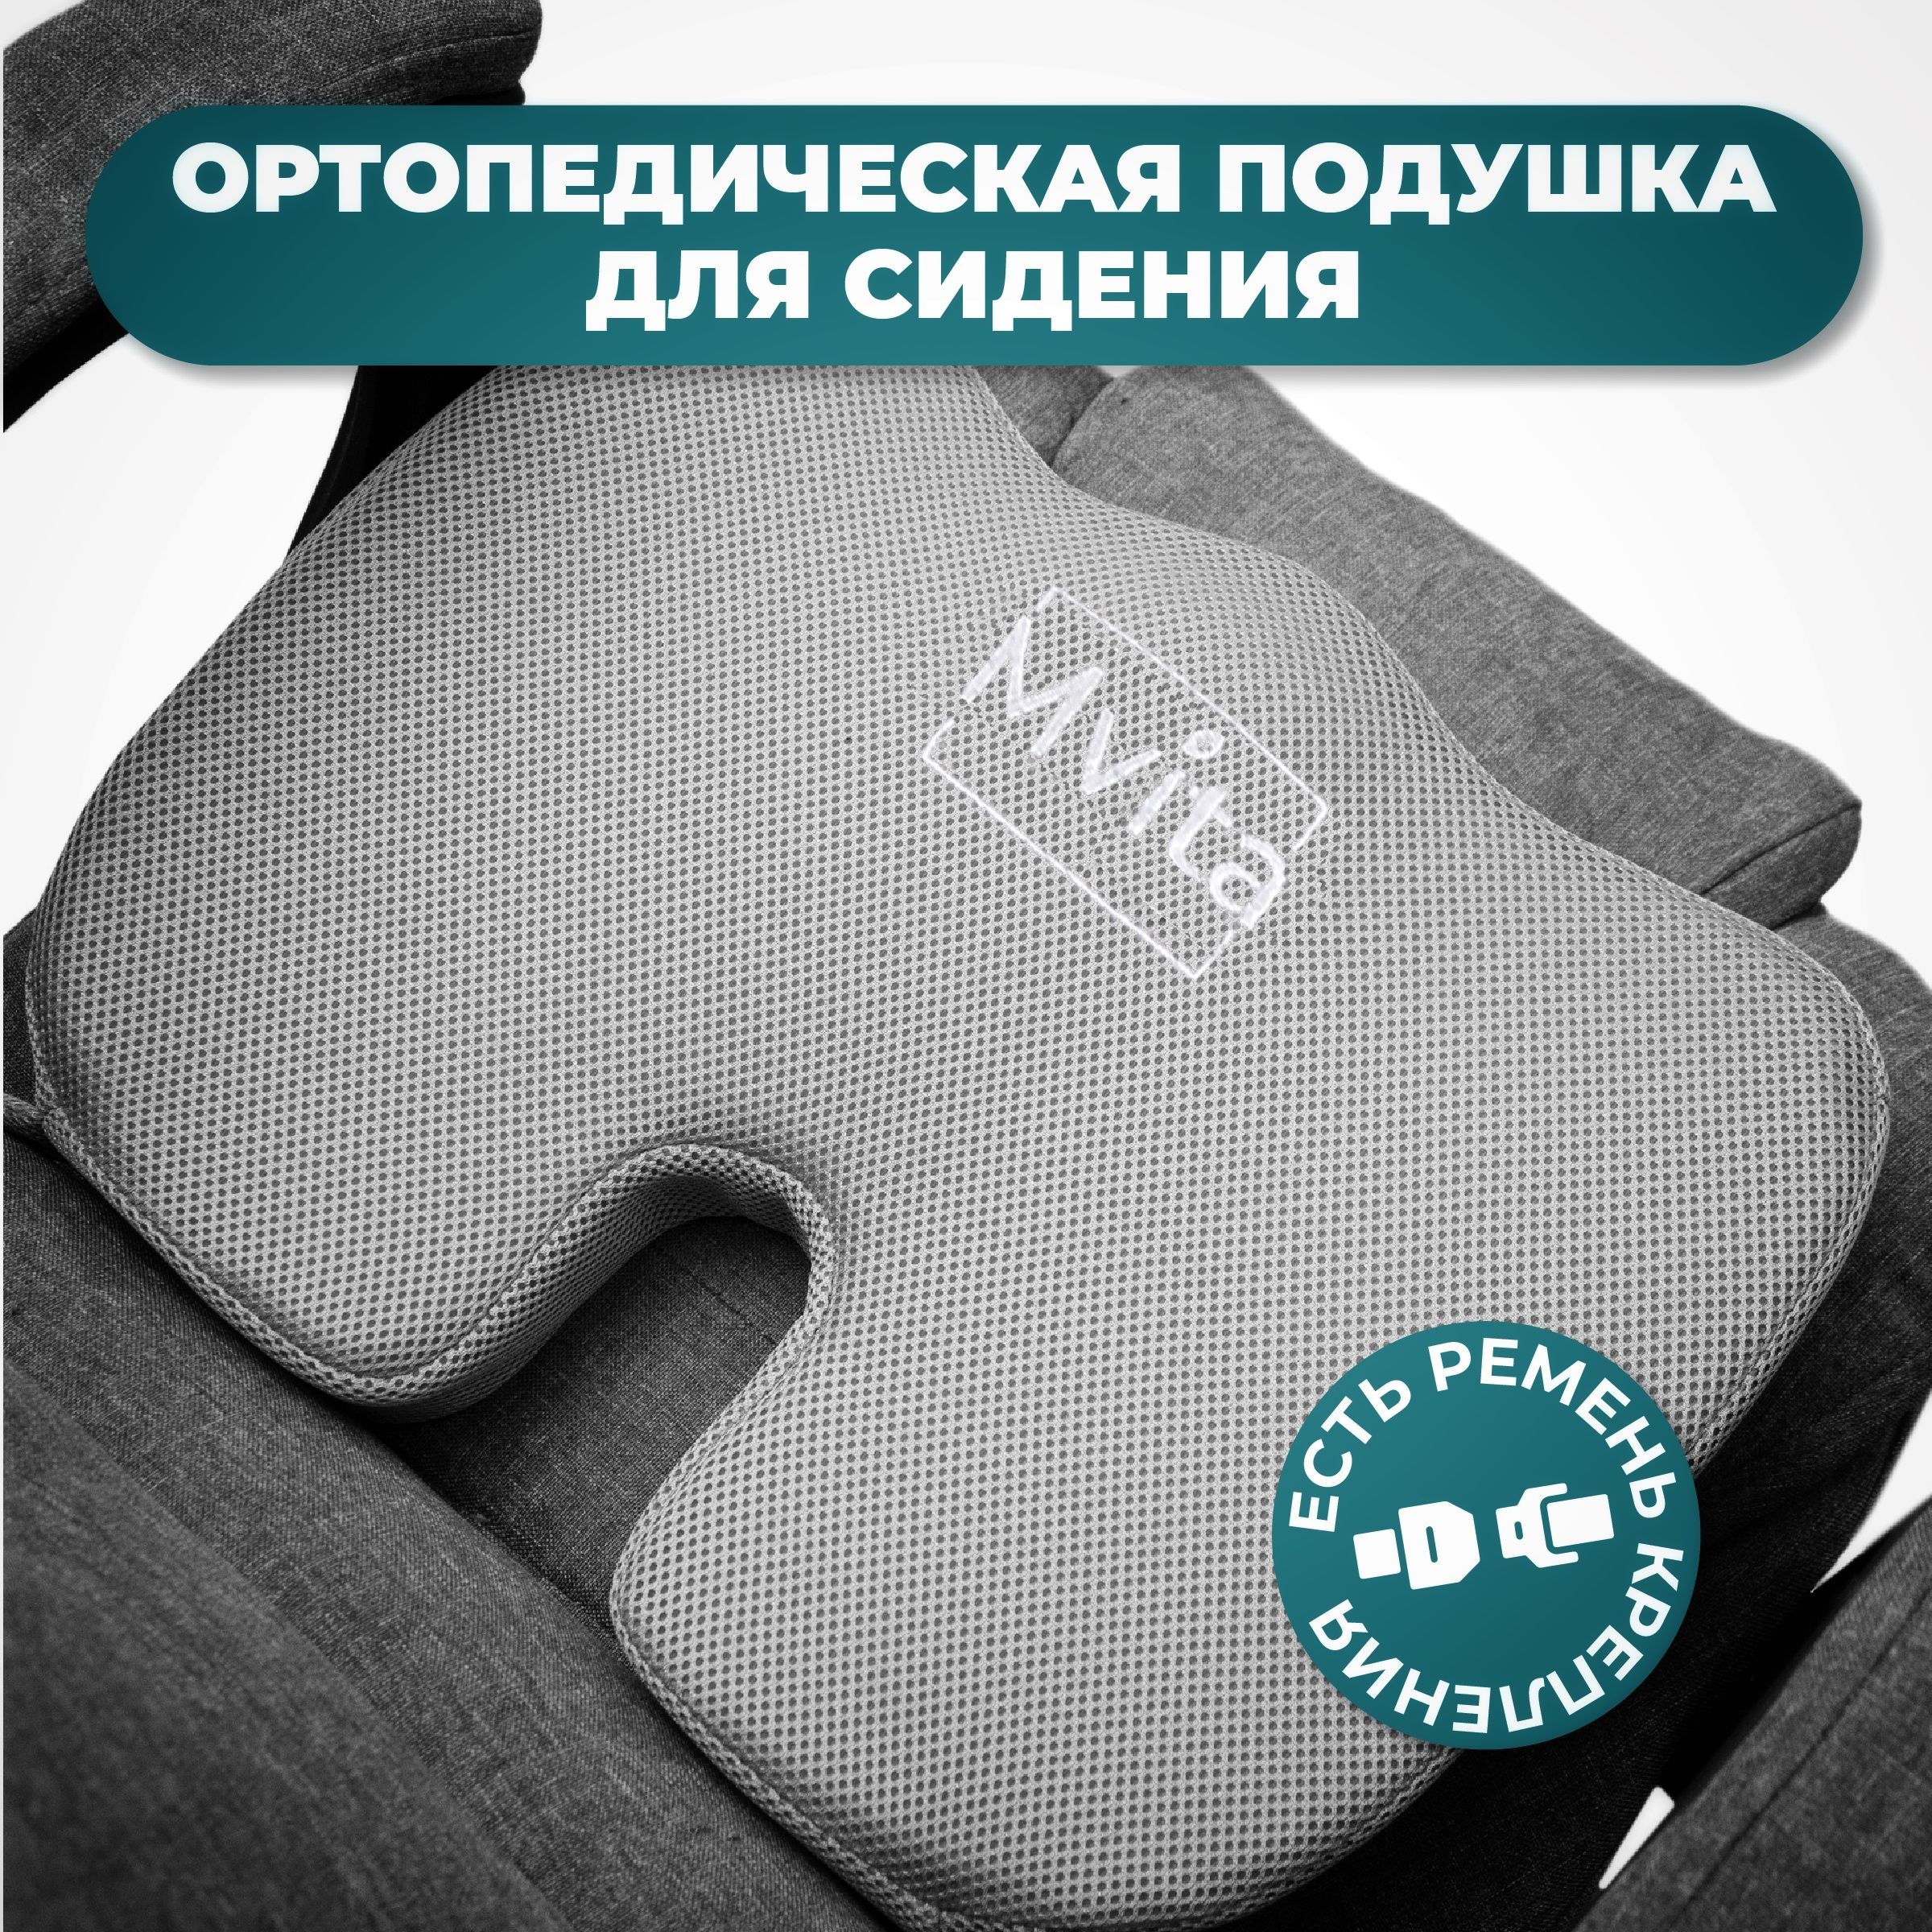 Подушки для сидения и поясницы купить в Ортомедике ᐉ Цена в Украине